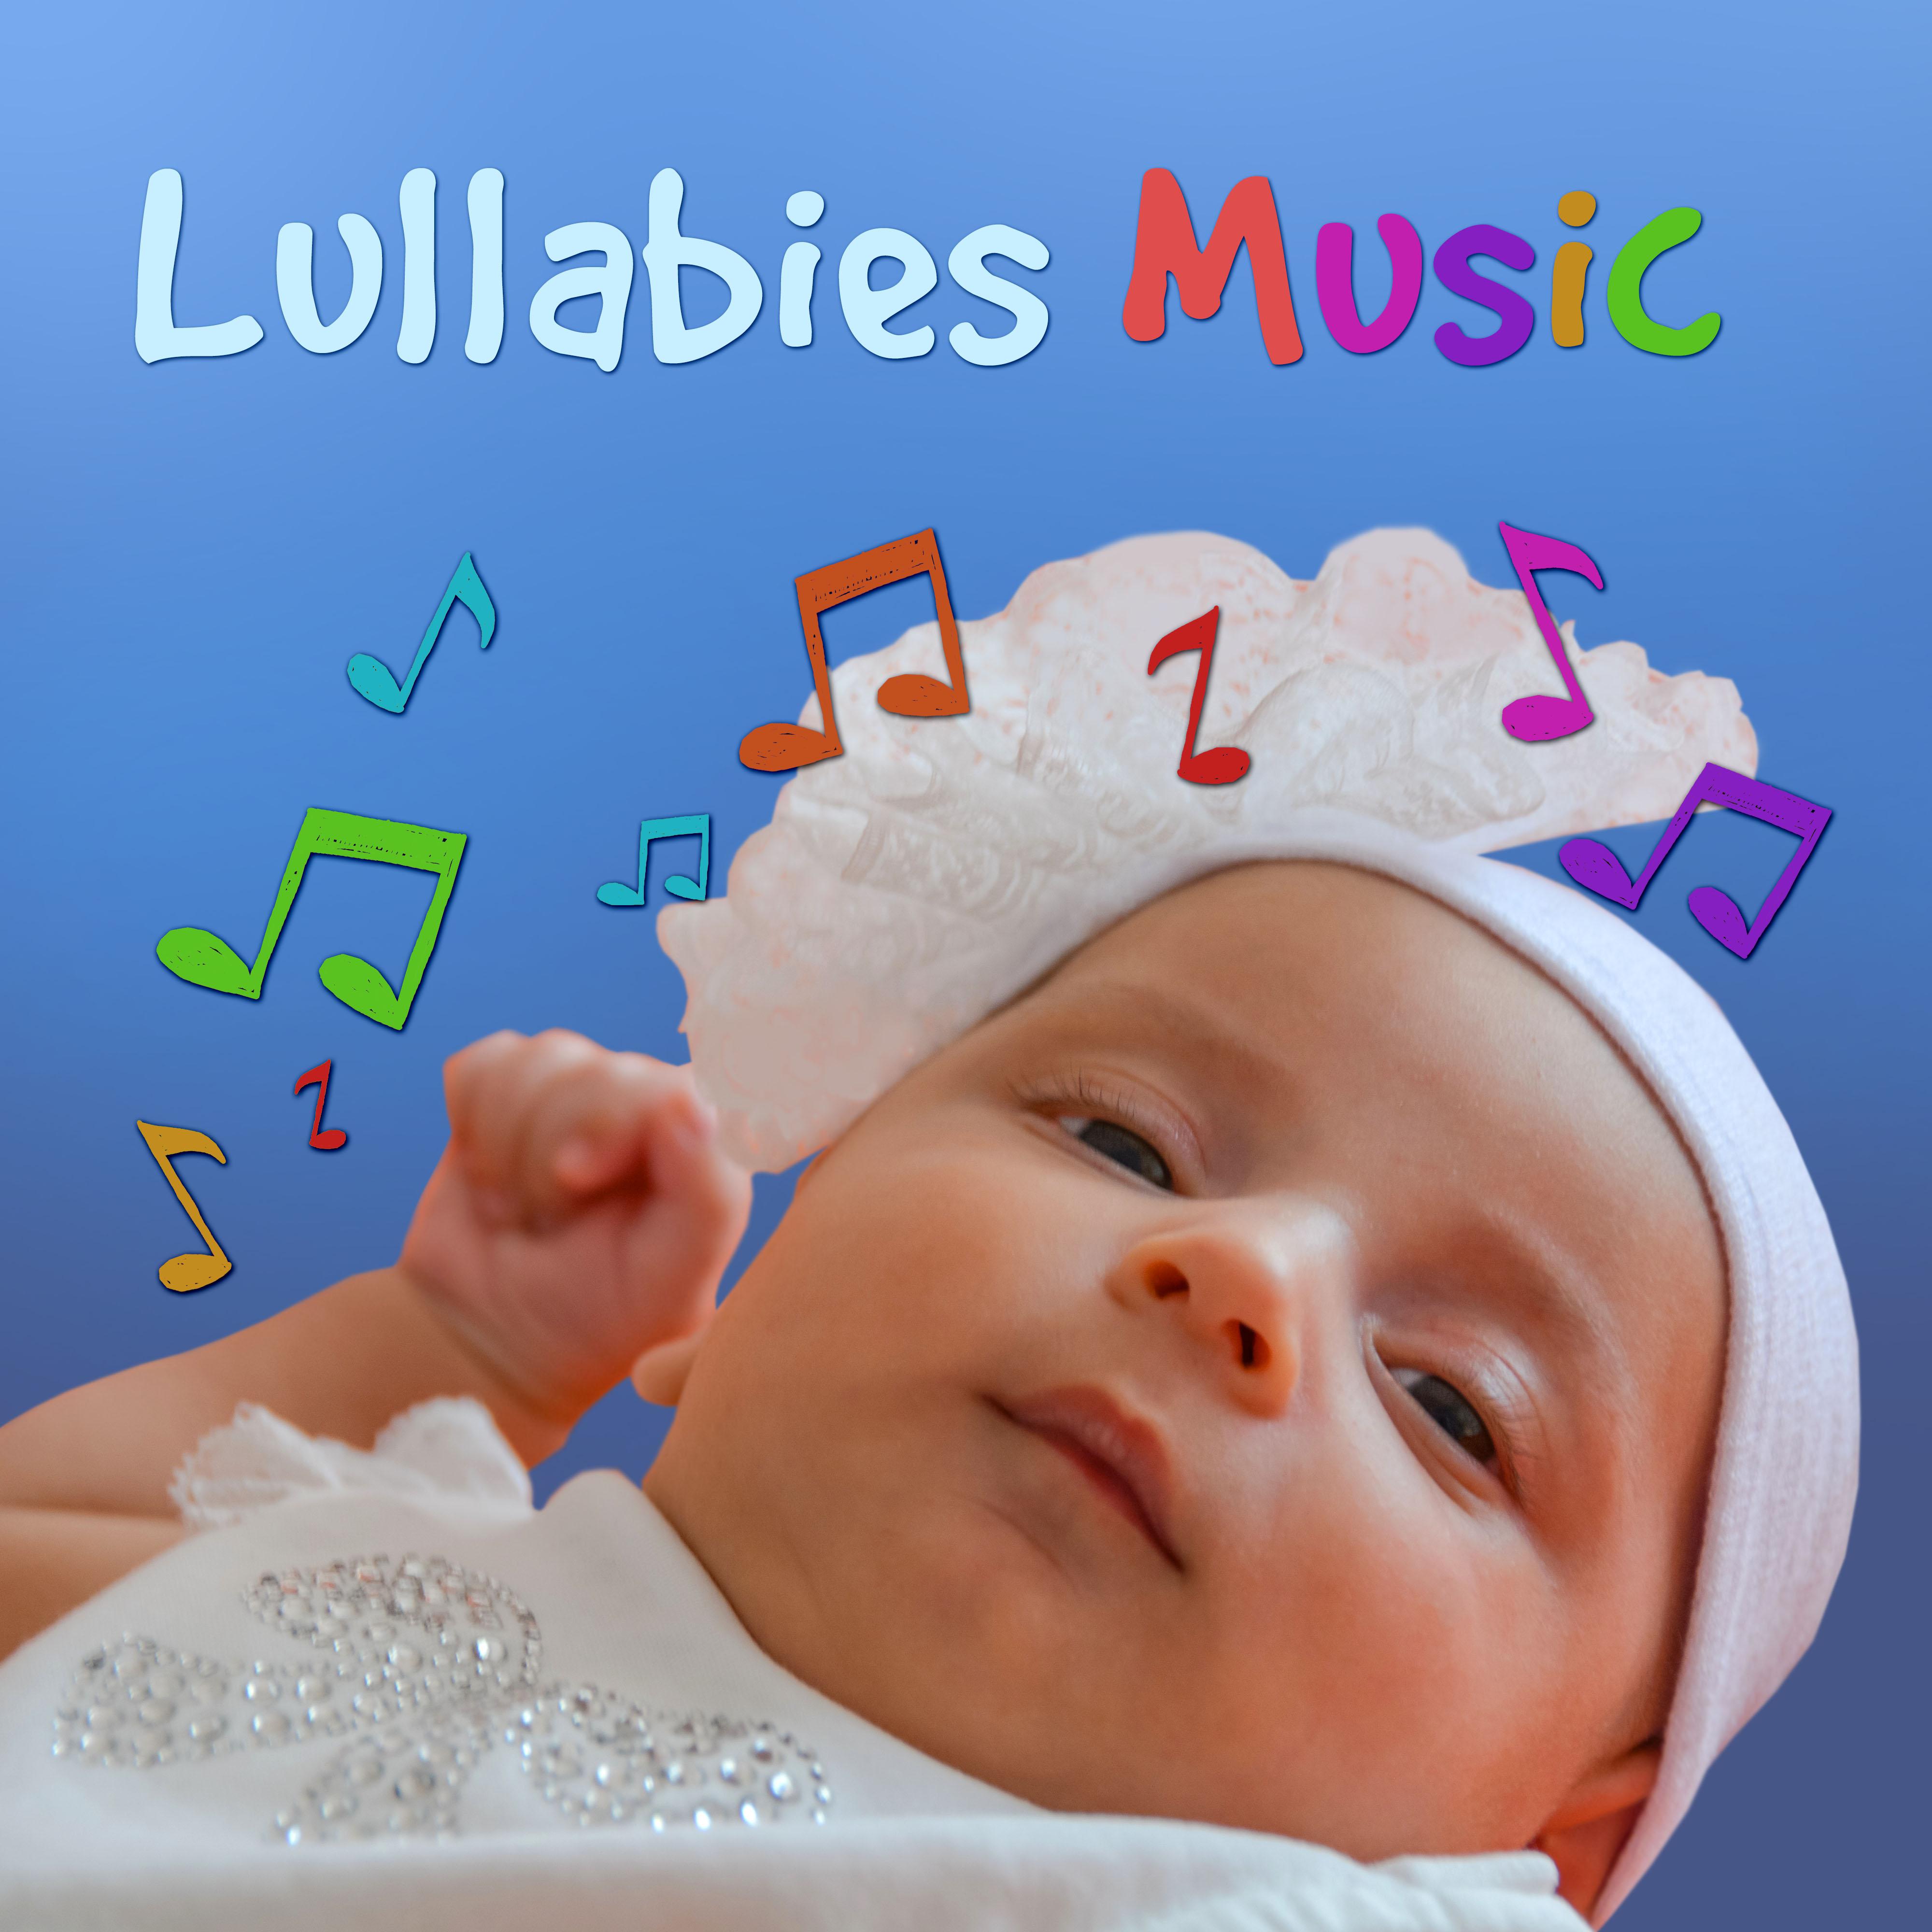 Lullabies Music - Music for Children, New Age Sleep Sounds for Newborn, Peaceful Music, Long Sleep